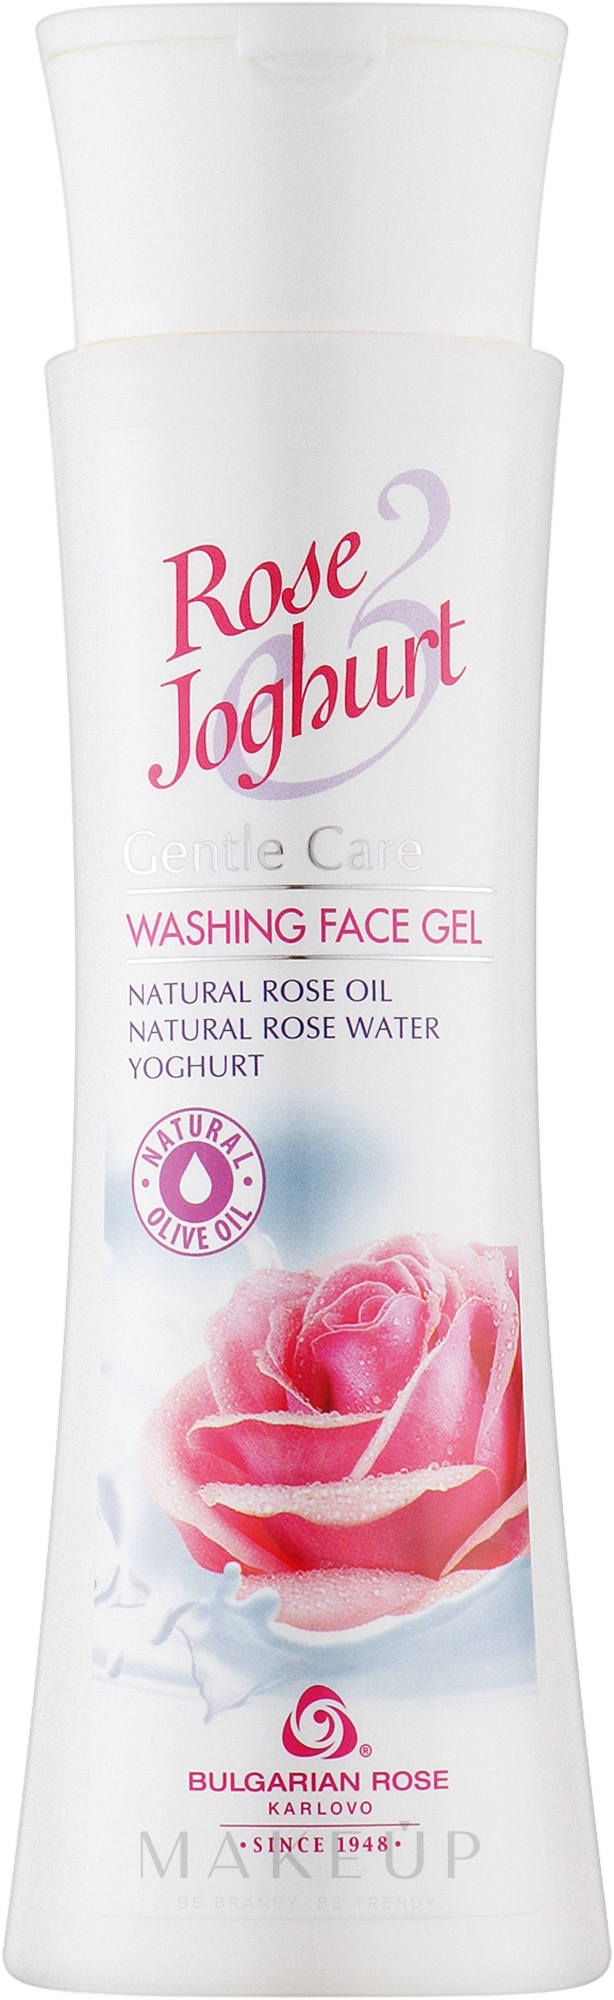 Gesichtswaschgel mit natürlichem Rosenöl, Rosenwasser und Yoghurt - Bulgarian Rose Rose Joghurt Gel — Bild 200 ml